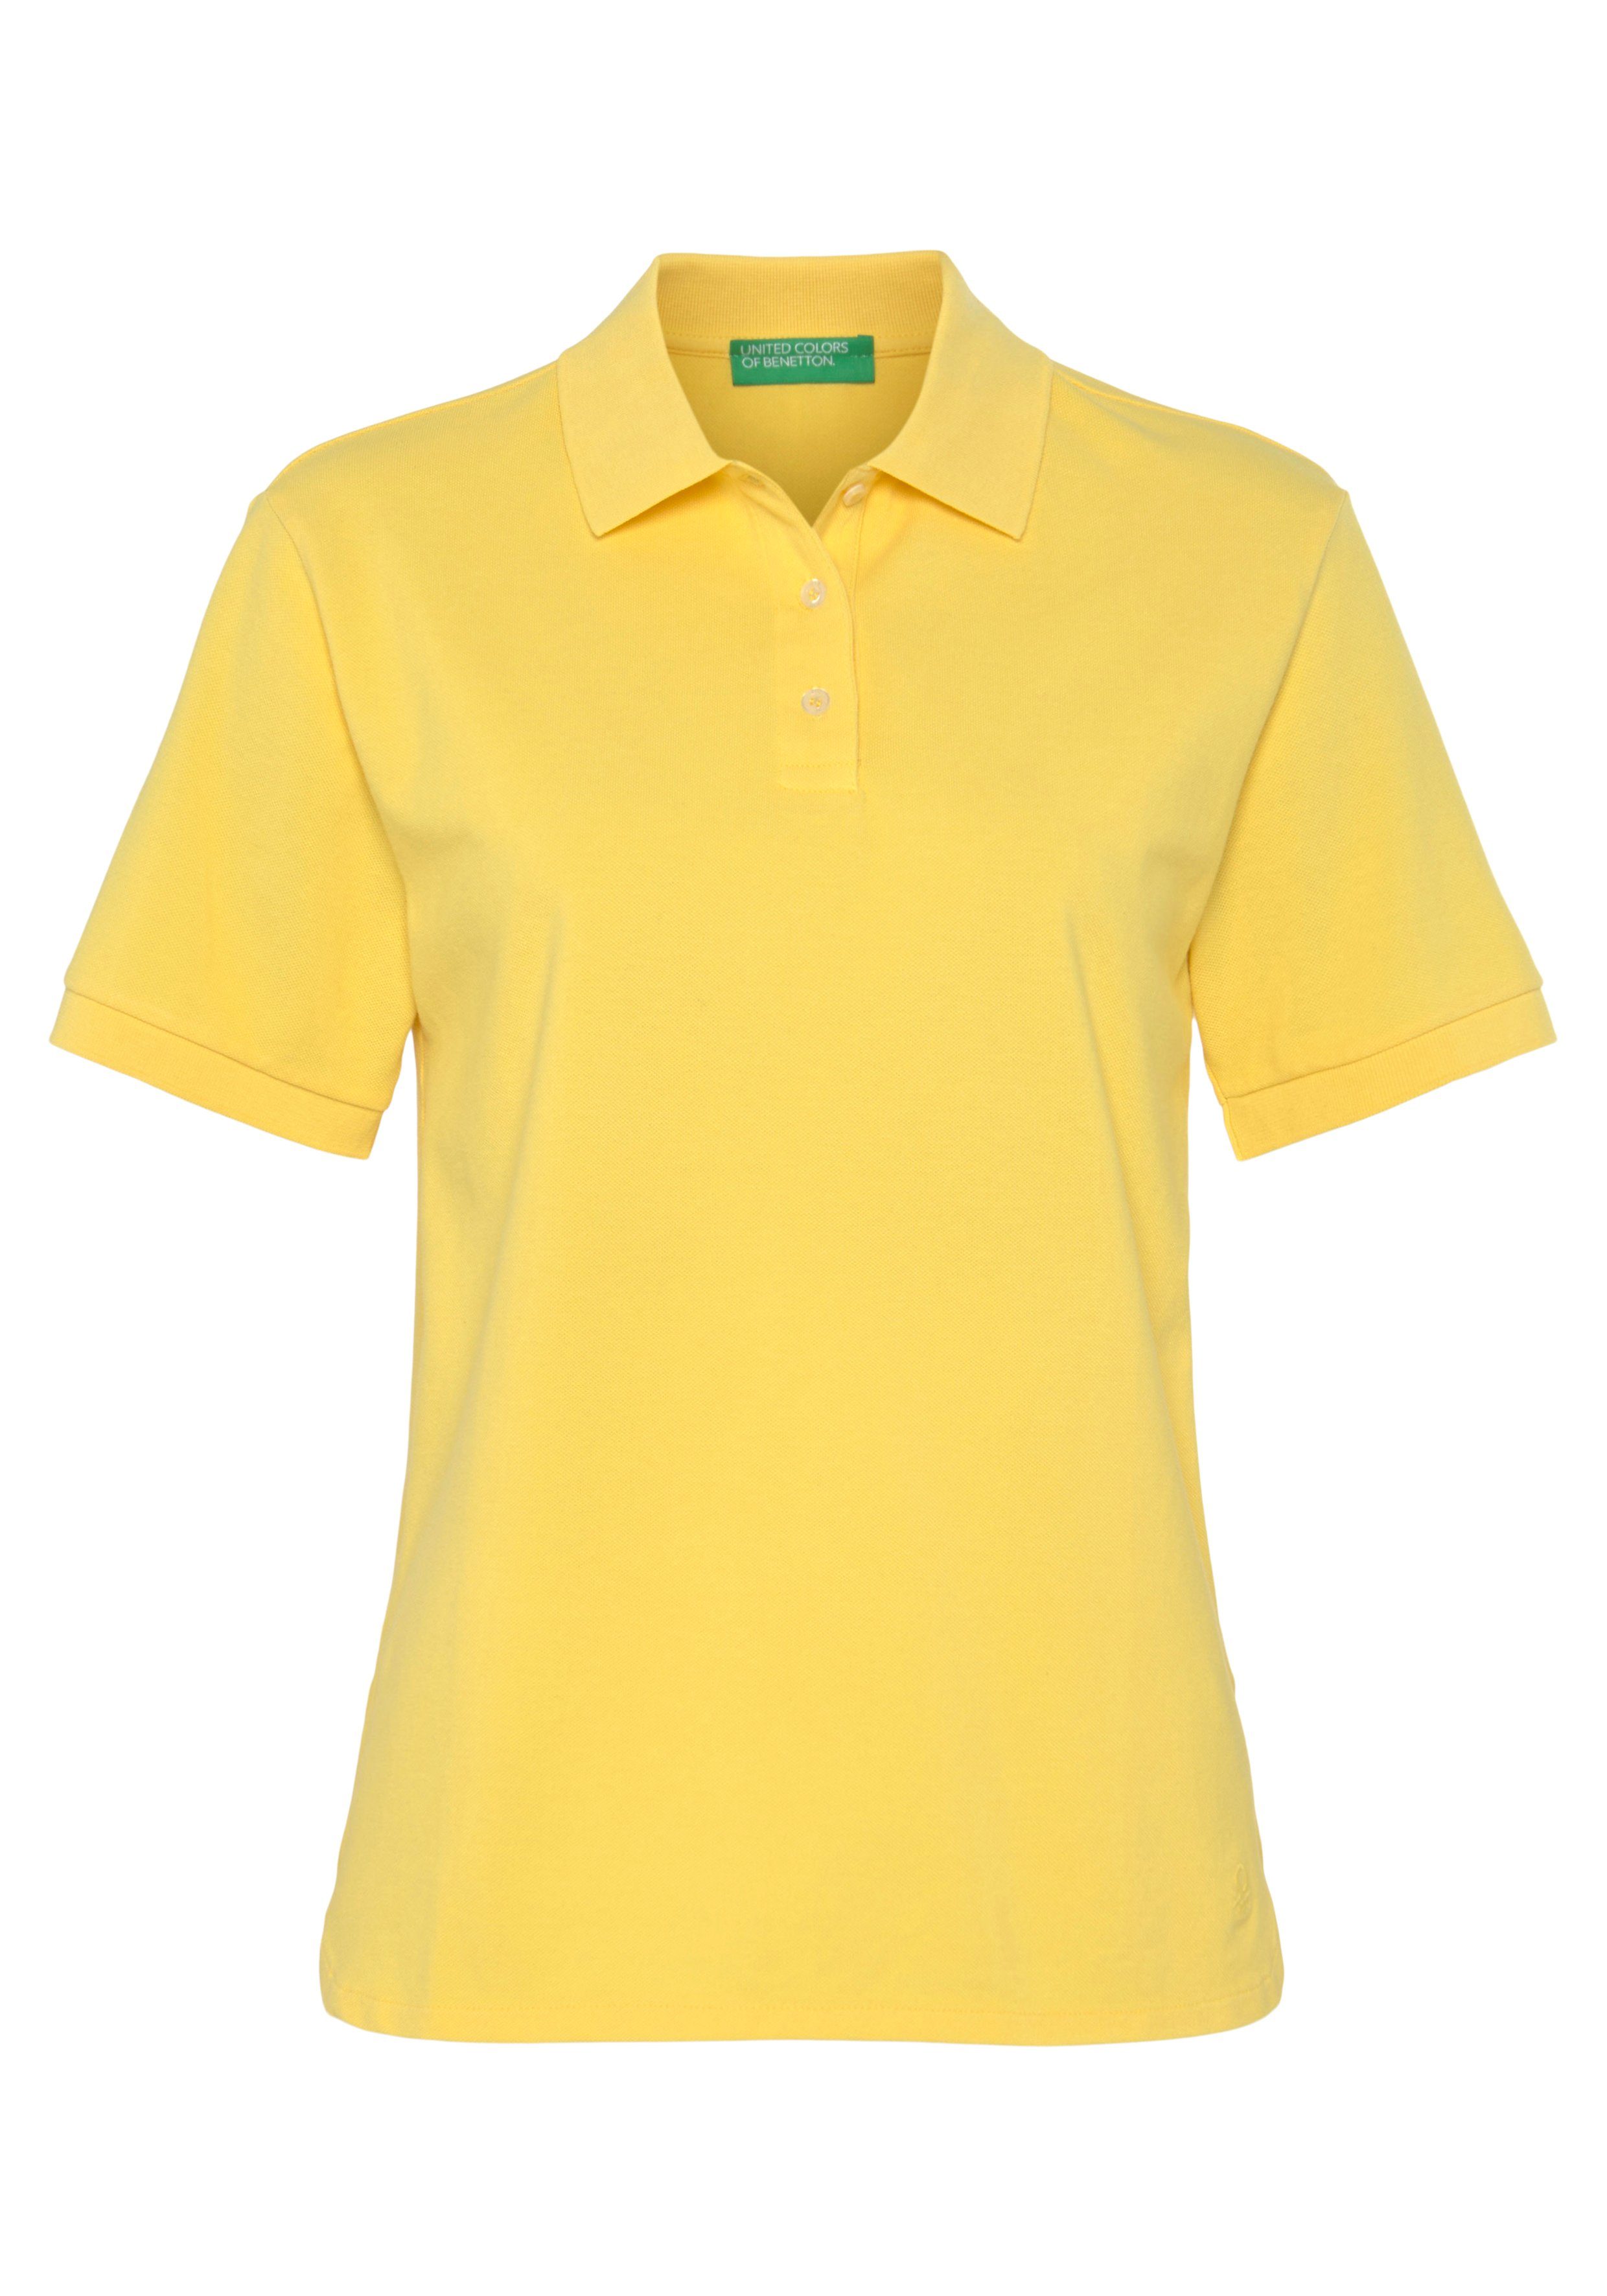 United Colors of Benetton Poloshirt mit perlmuttfarbenen Knöpfen gelb